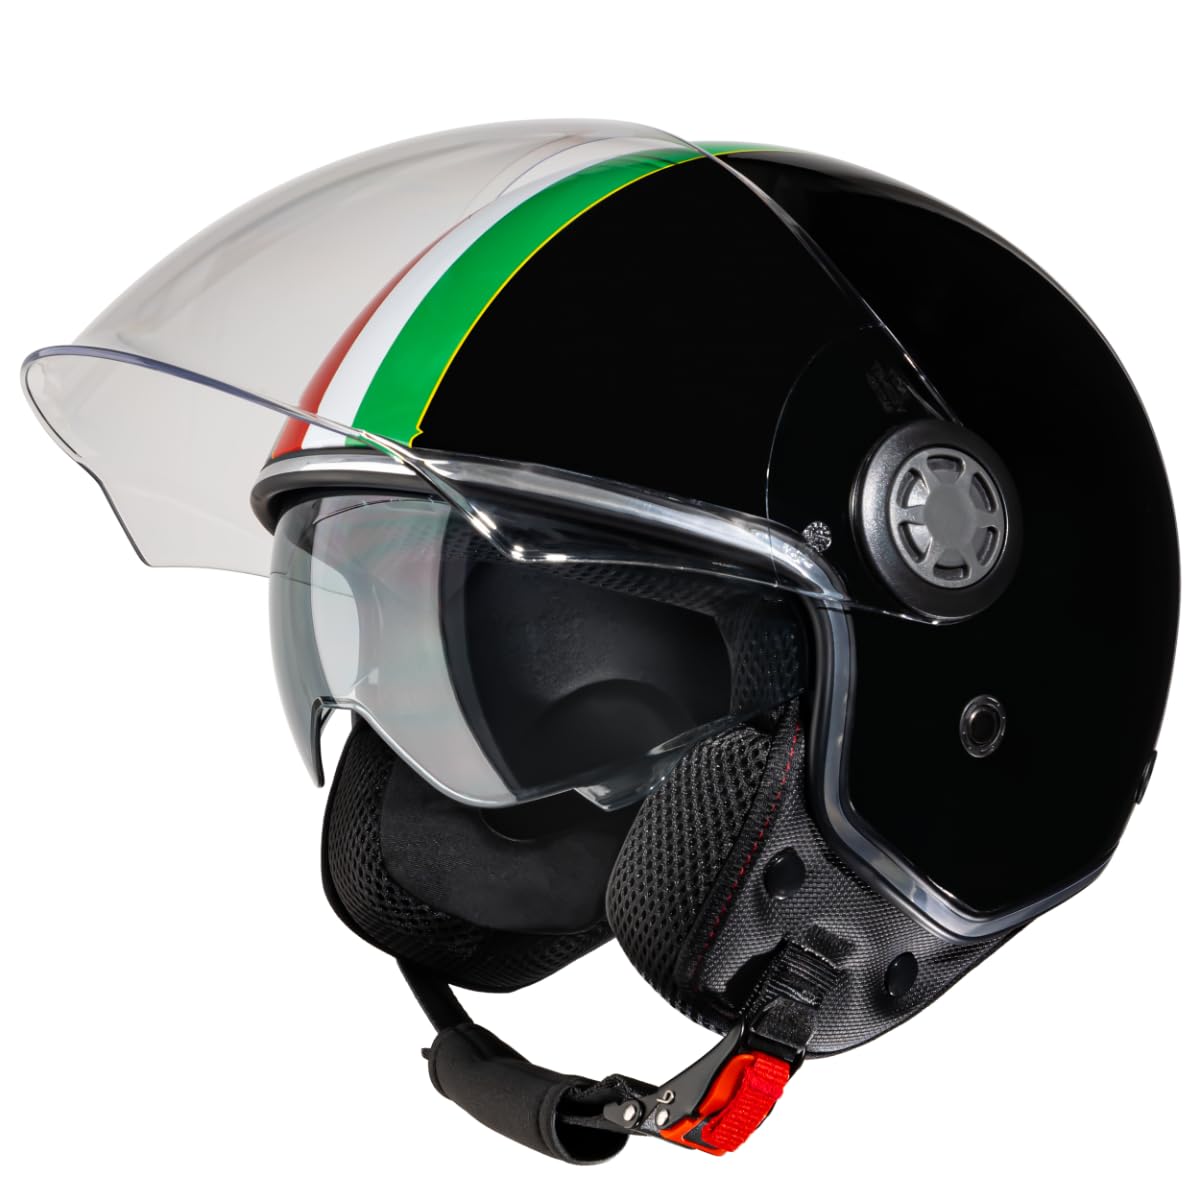 VINZ Varese Jethelm mit Doppelvisier | Roller Helm Fashionhelm mit Italienische Flagge | In Gr. XS-XXL | Jet Helm mit Sonnenblende | ECE 22.06 Zertifiziert | Motorradhelm mit Visier - Schwarz von Vinz